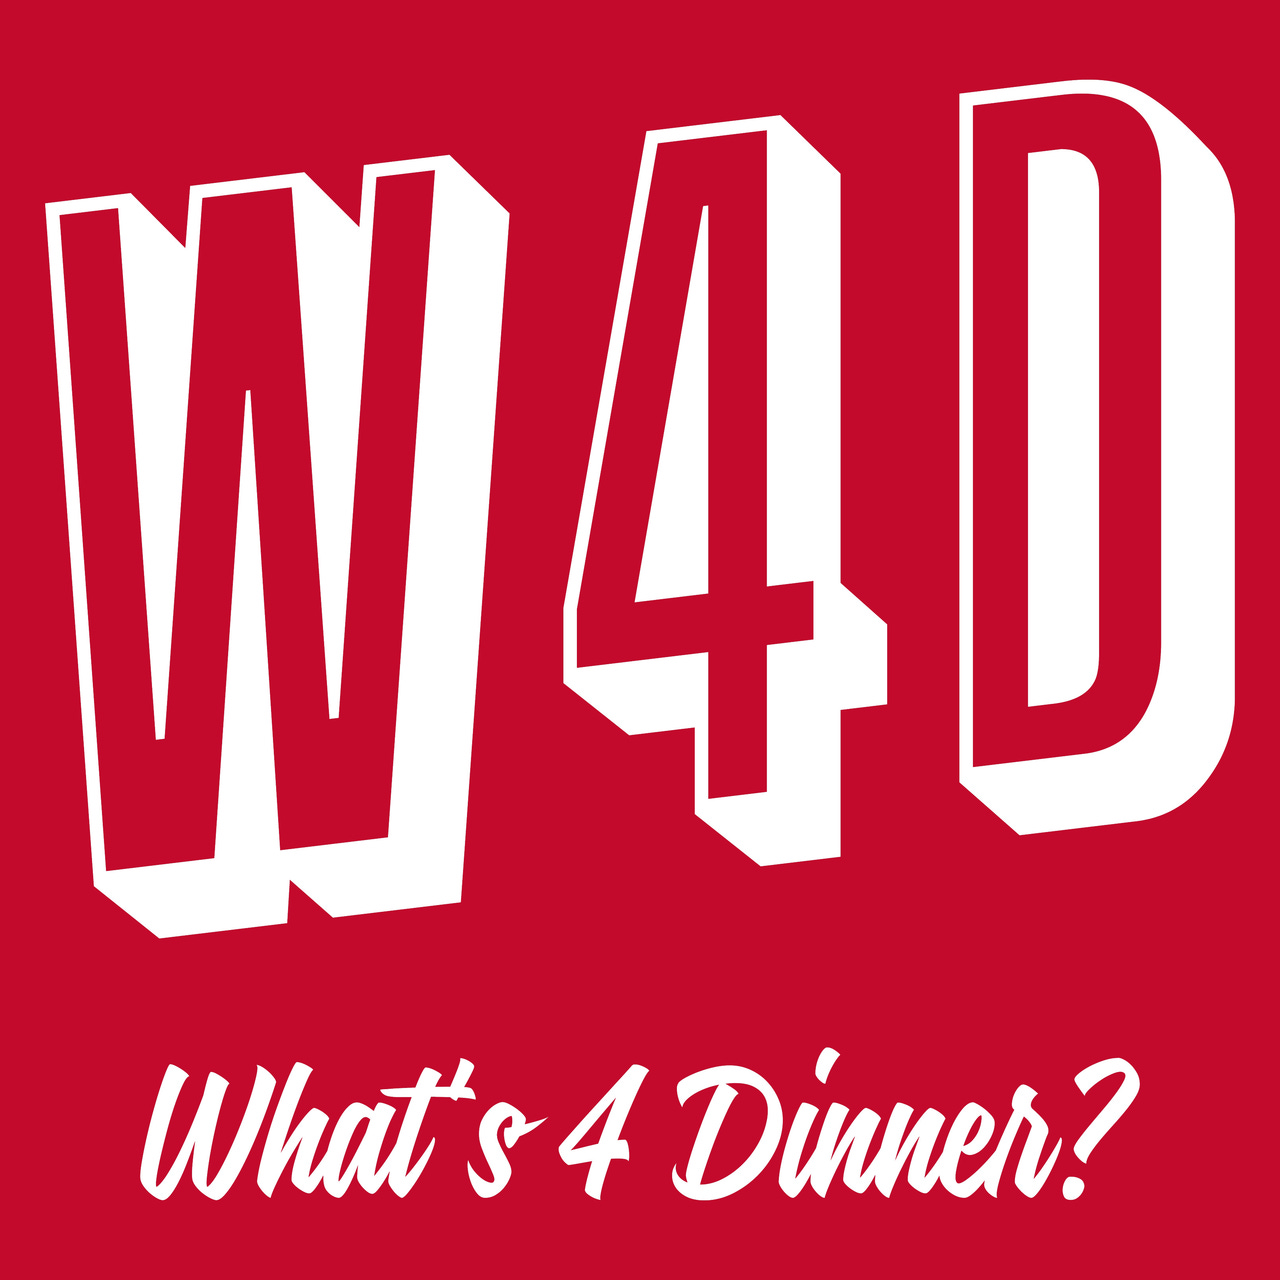 Artwork for "What's 4 Dinner?"